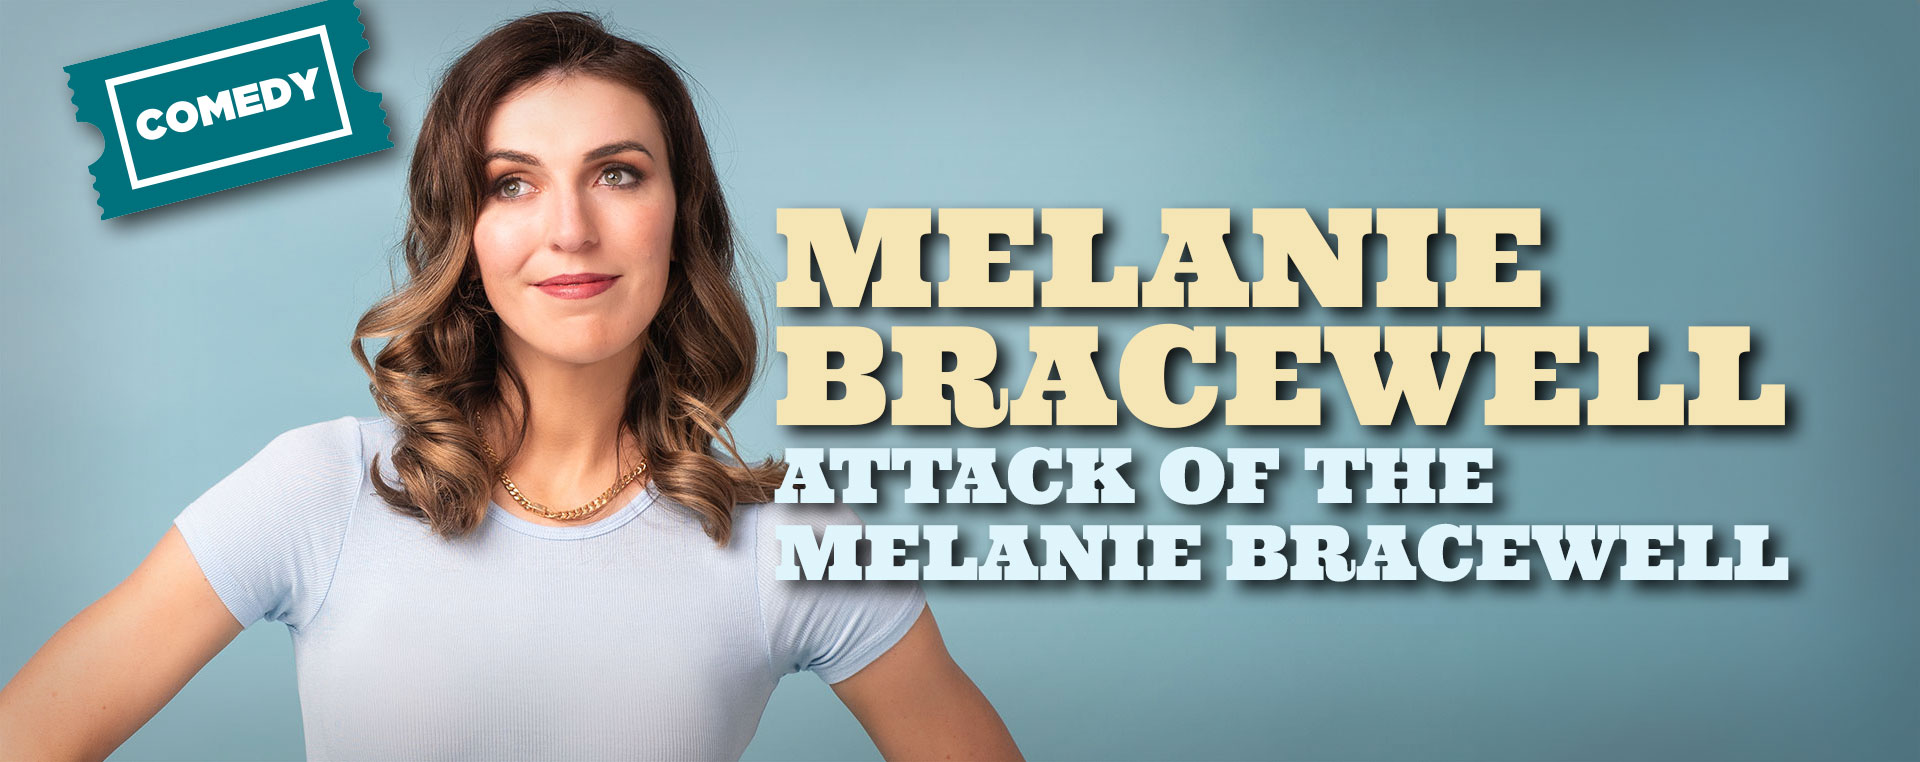 Melanie Bracewell — Attack of the Melanie Bracewell 24 March NSW